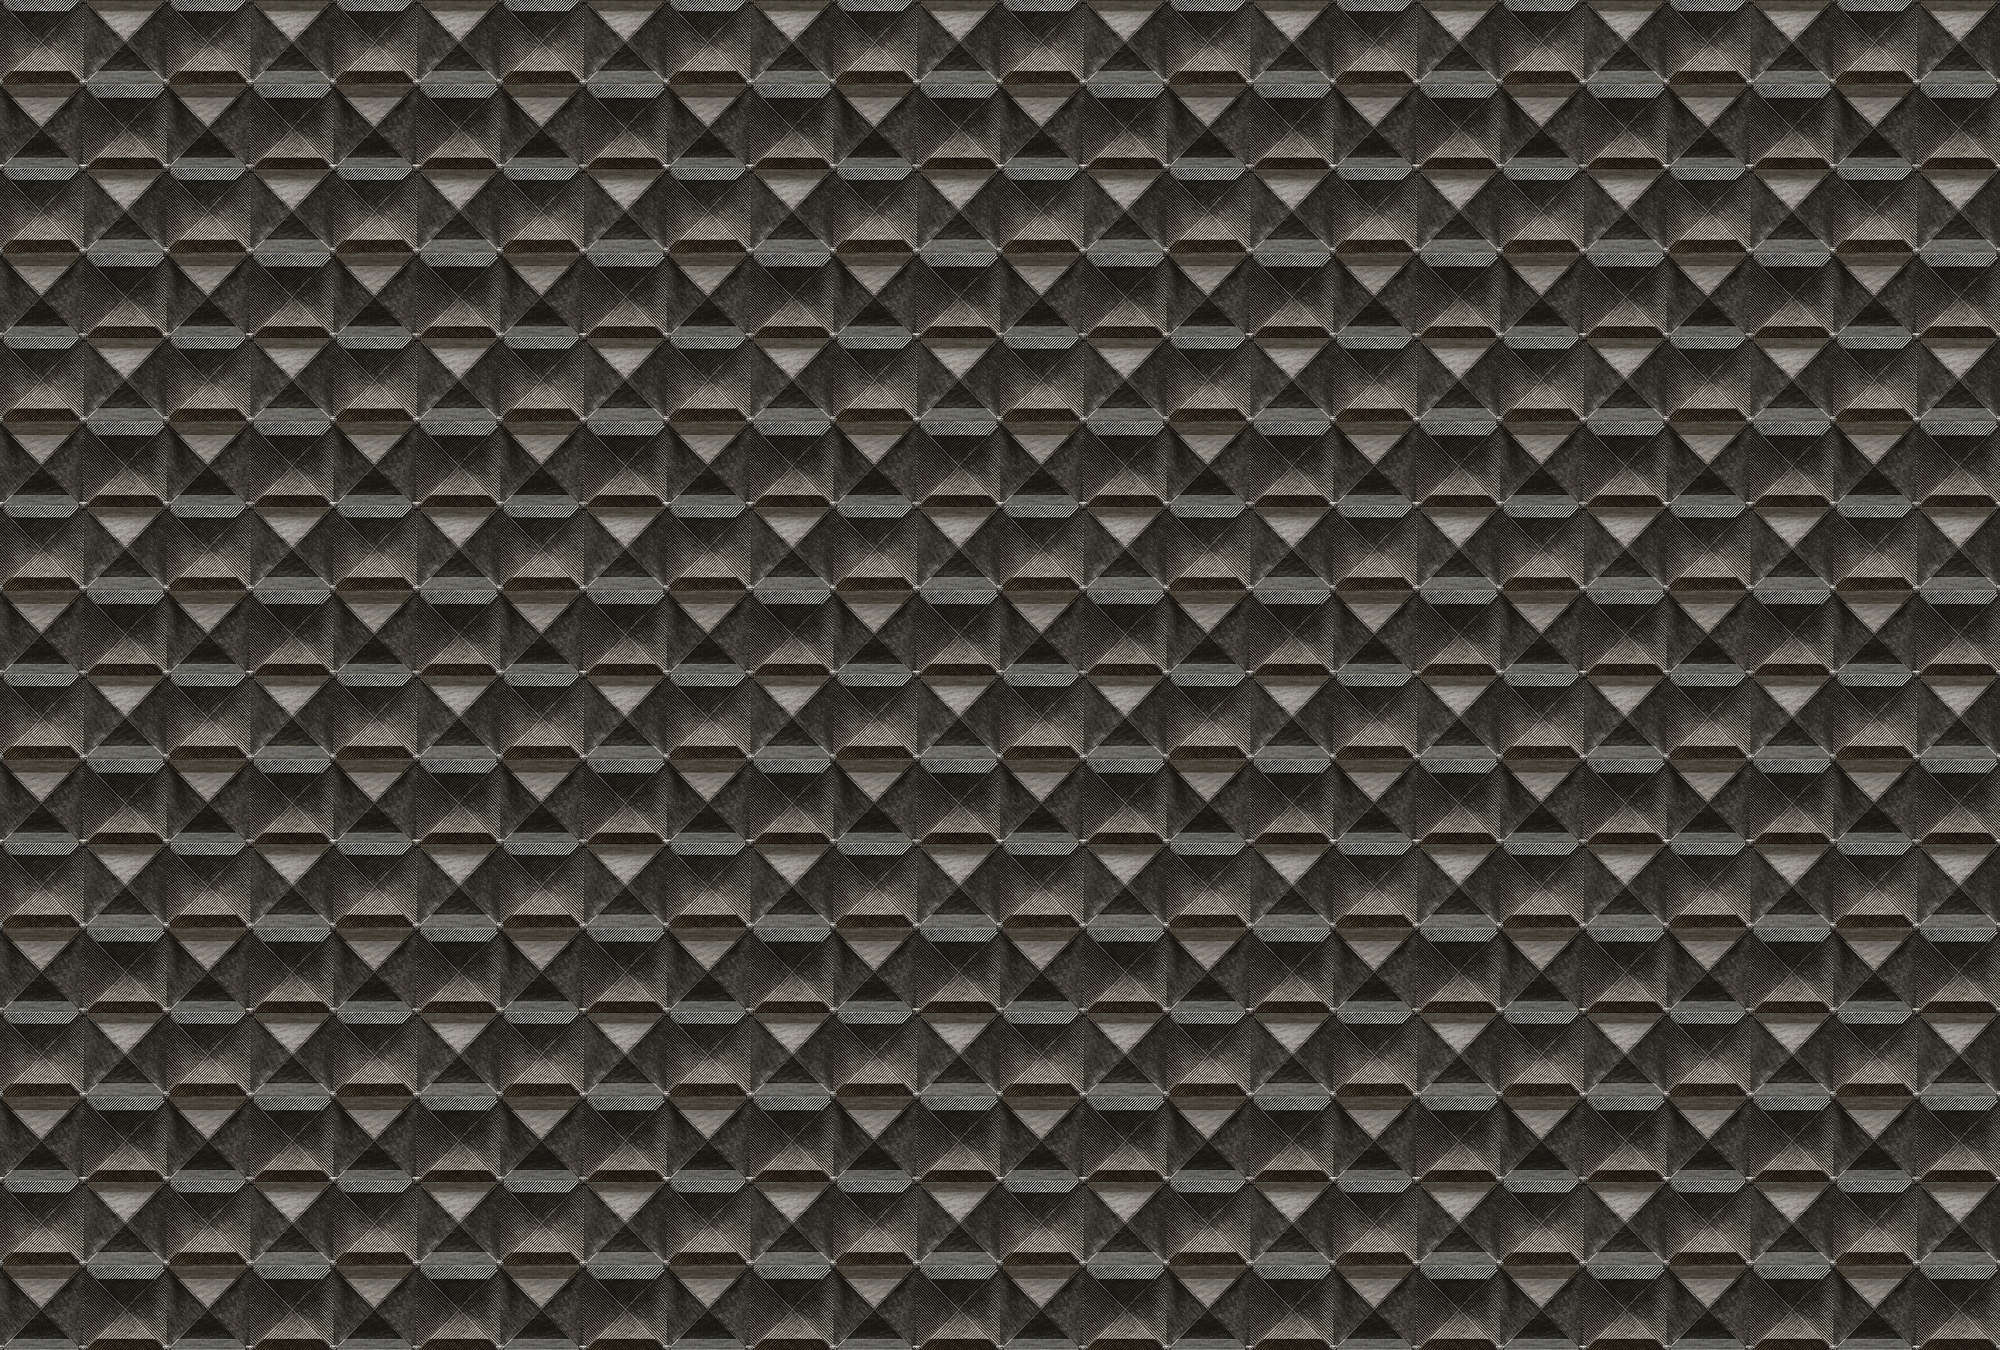             The edge 1 - Carta da parati 3D con disegno a losanghe in metallo - marrone, nero | perlescente in pile liscio
        